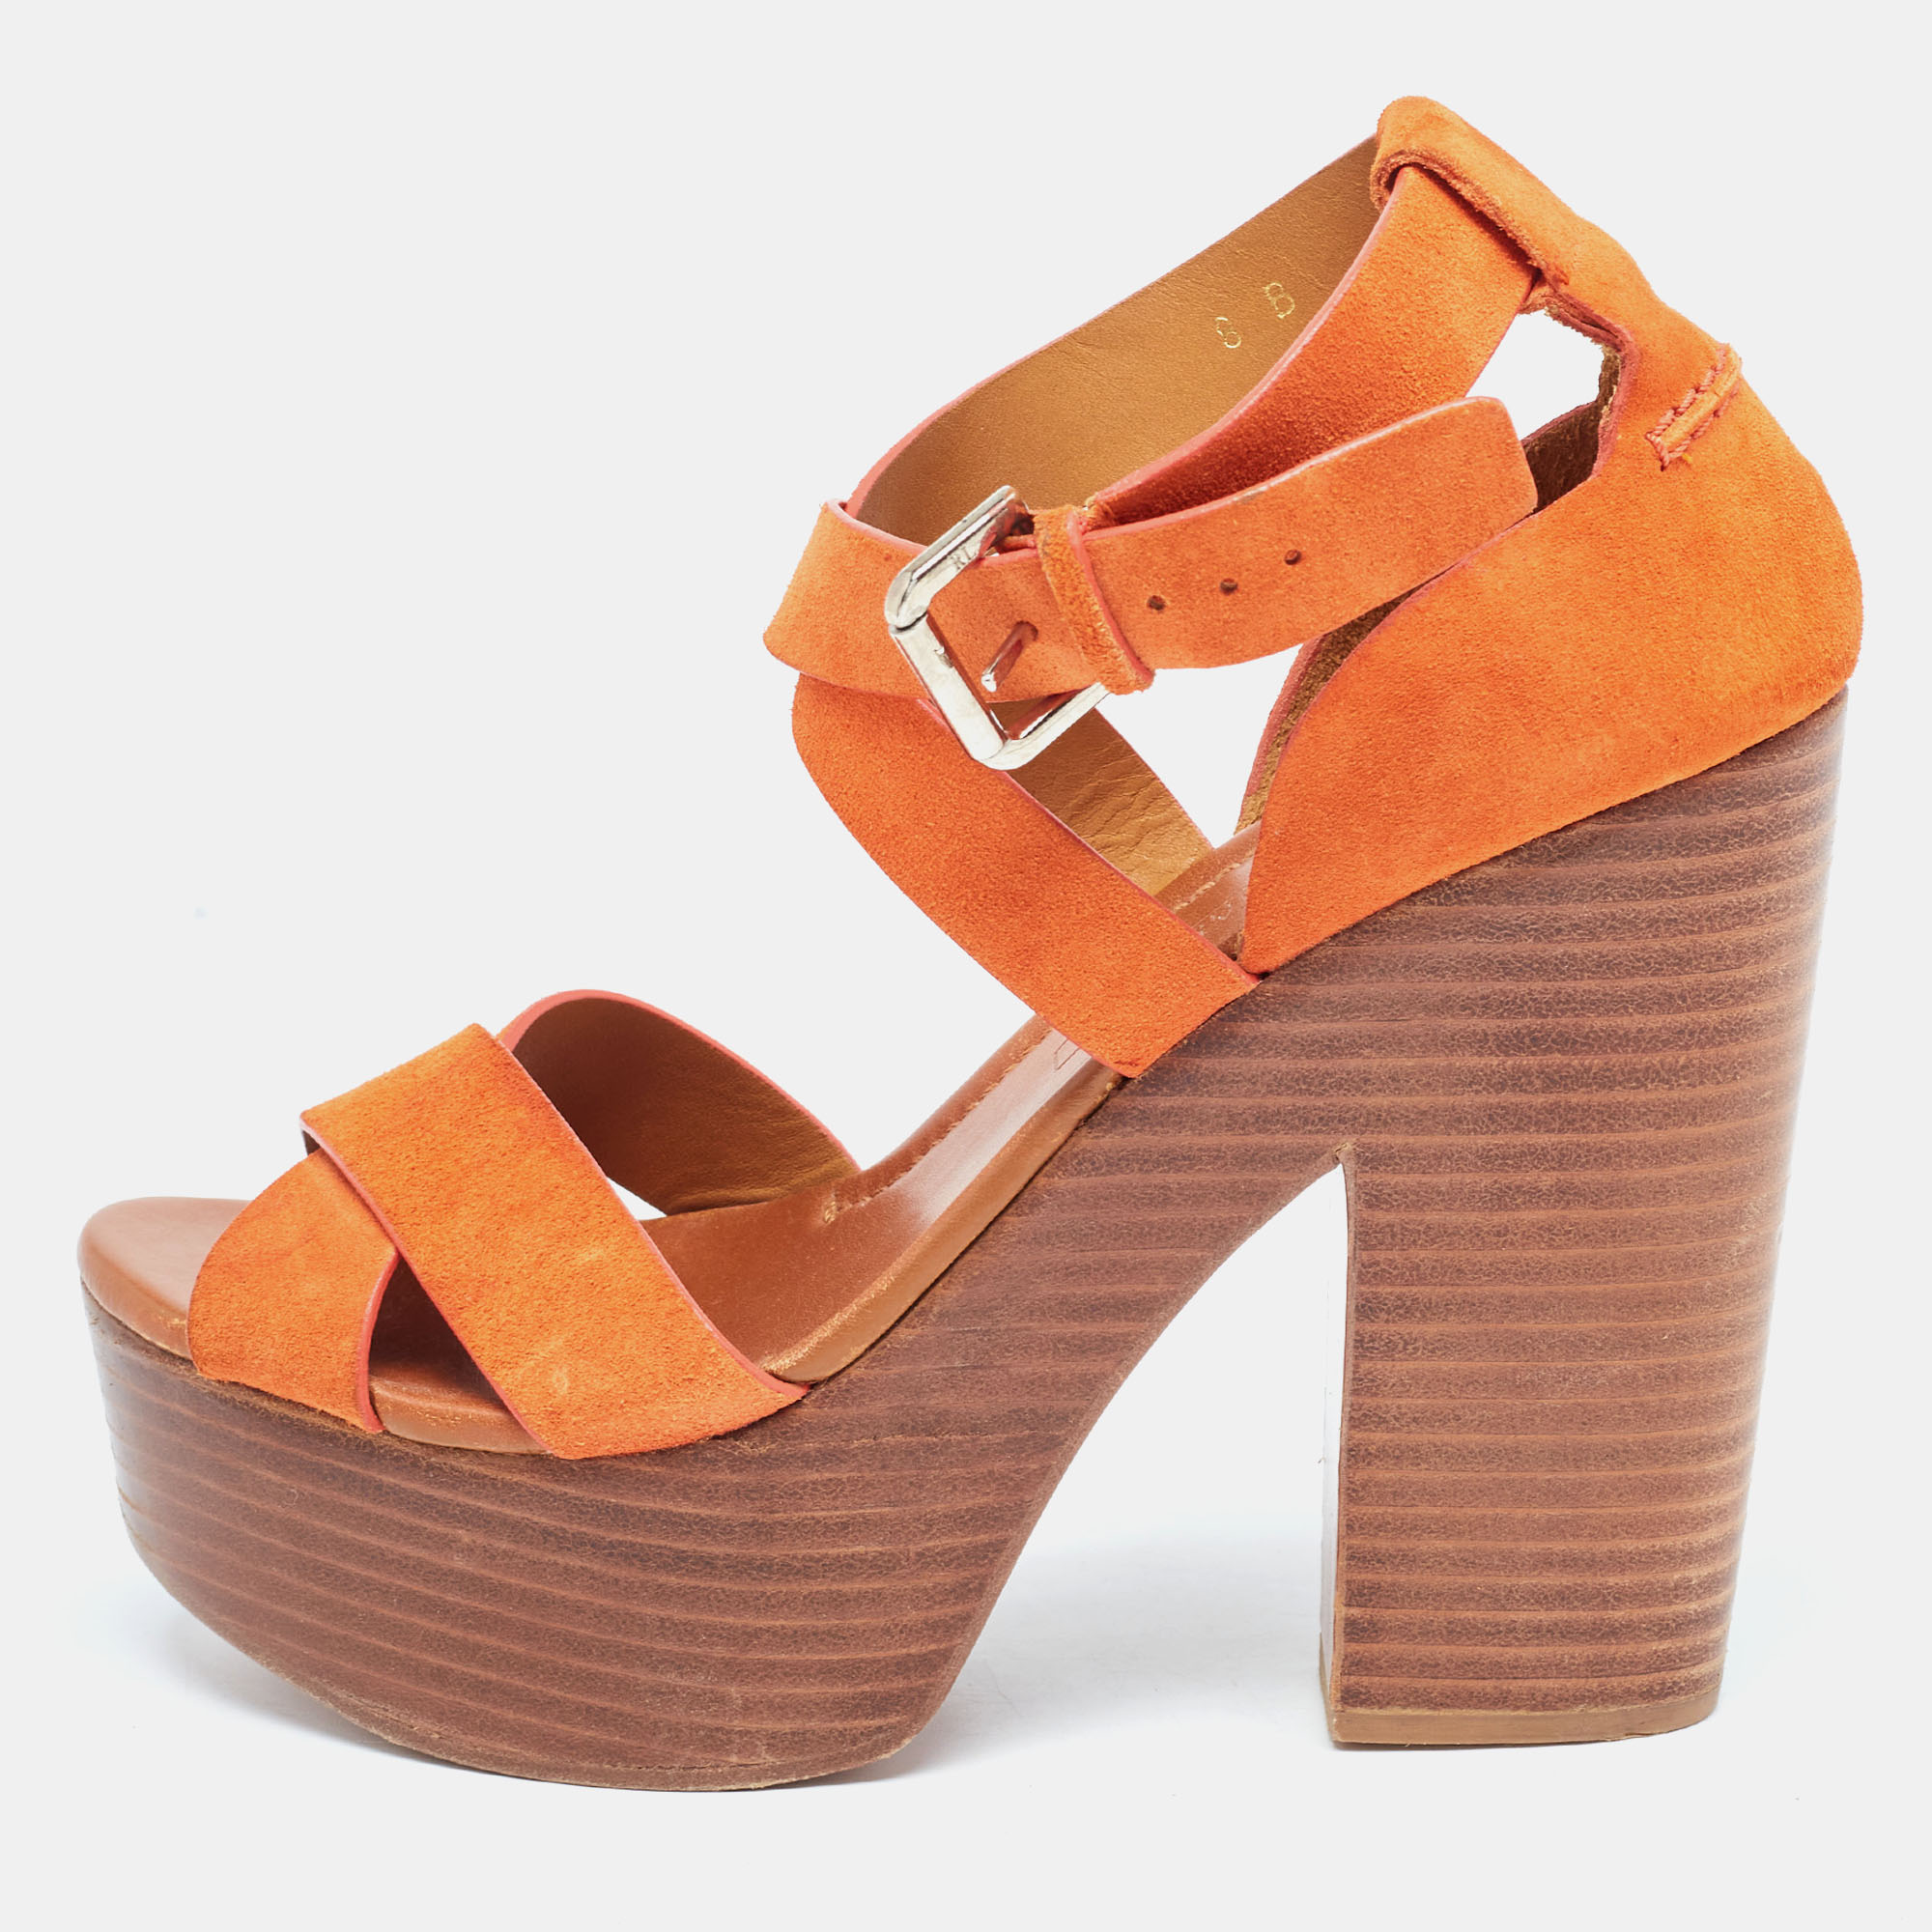 Ralph lauren collection orange suede alannah sandals size 38